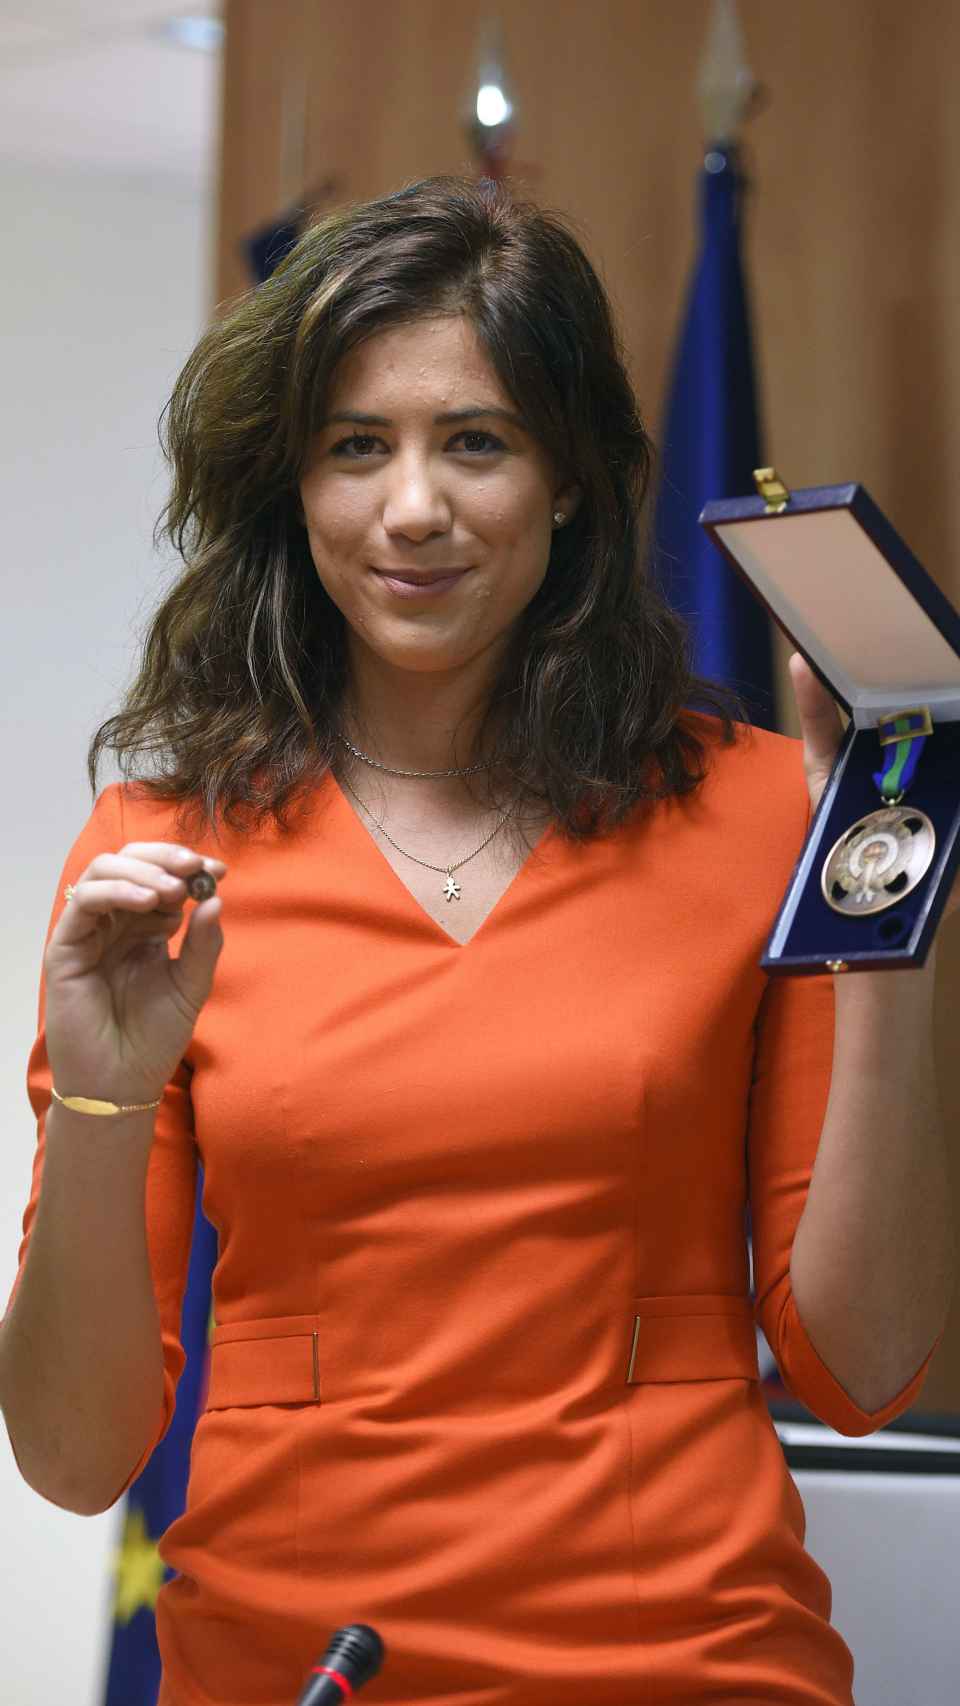 Garbiñe Muguruza recogió la Medalla de bronce al mérito deportivo en 2015.